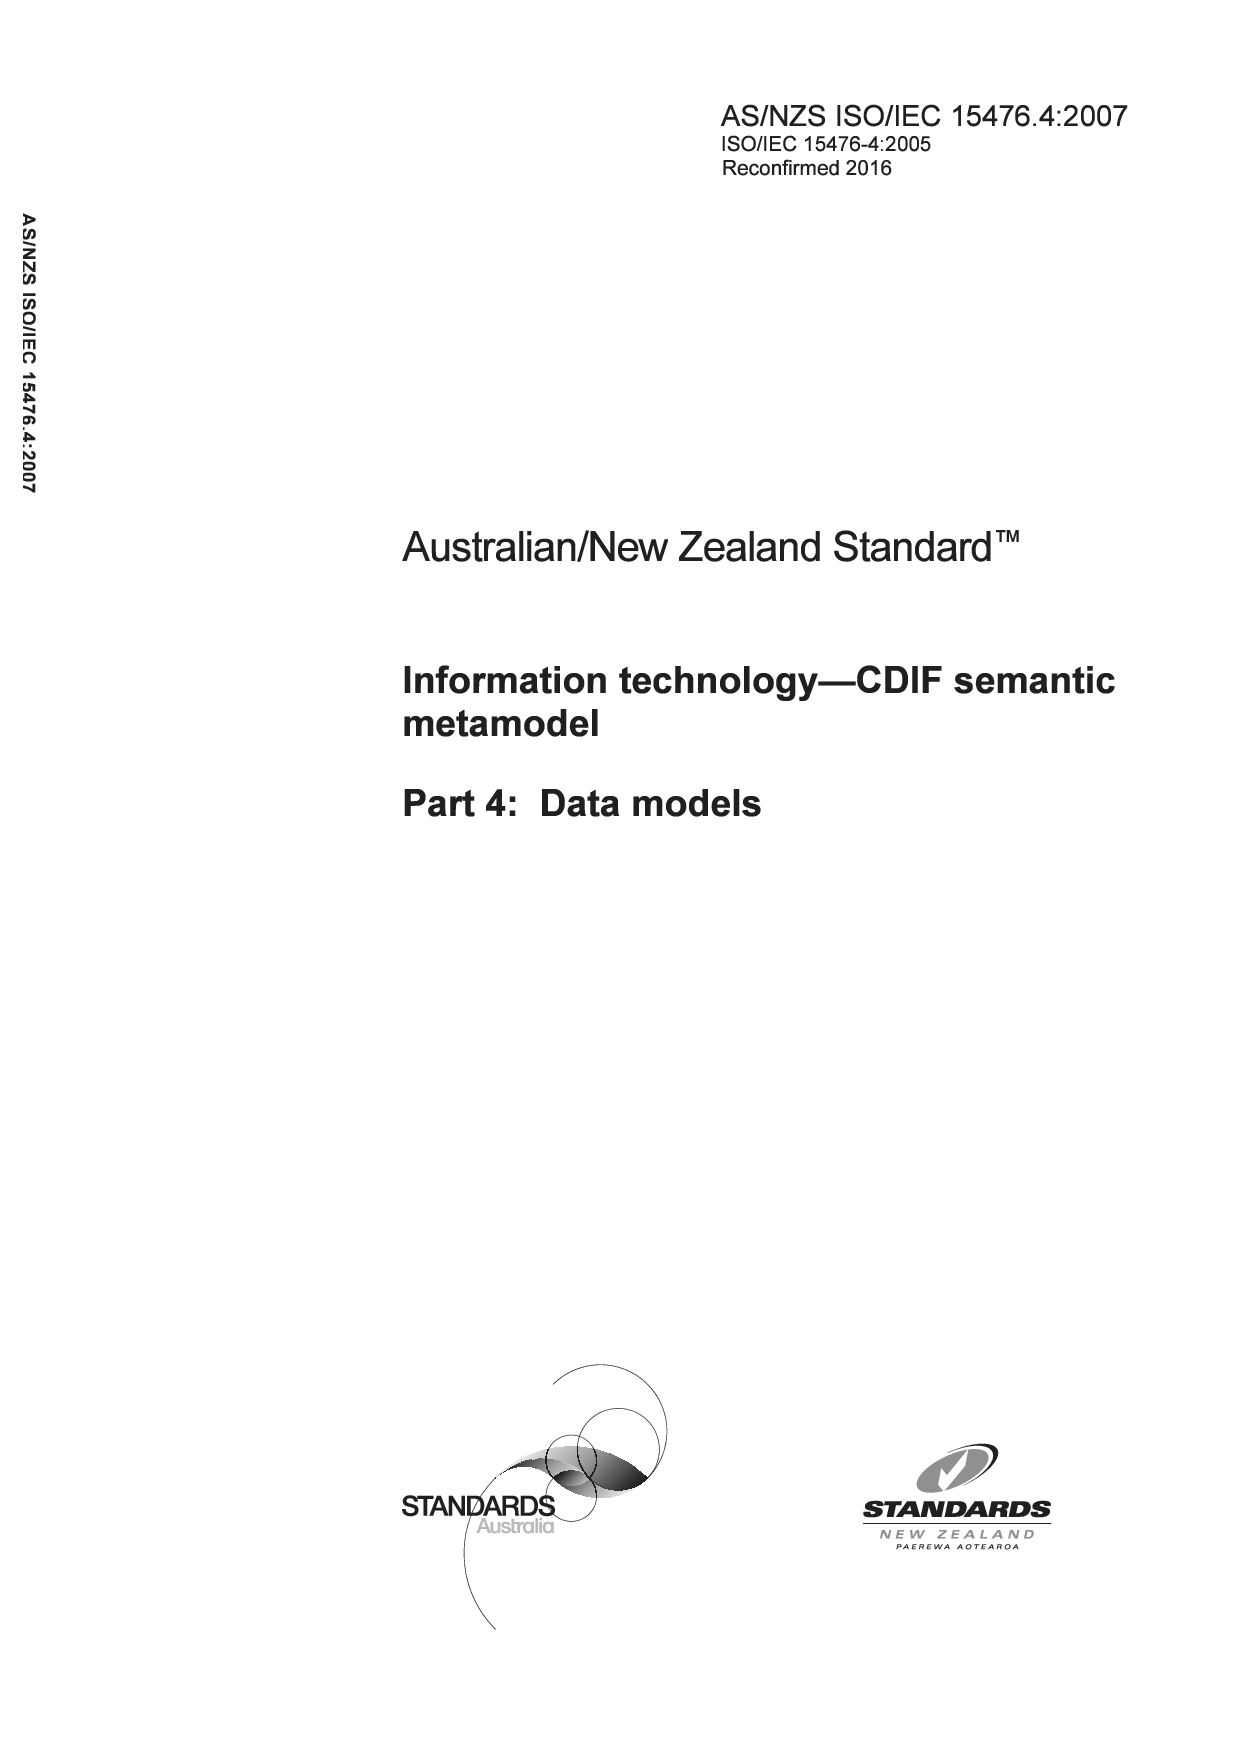 AS/NZS ISO/IEC 15476.4:2007(R2016)封面图